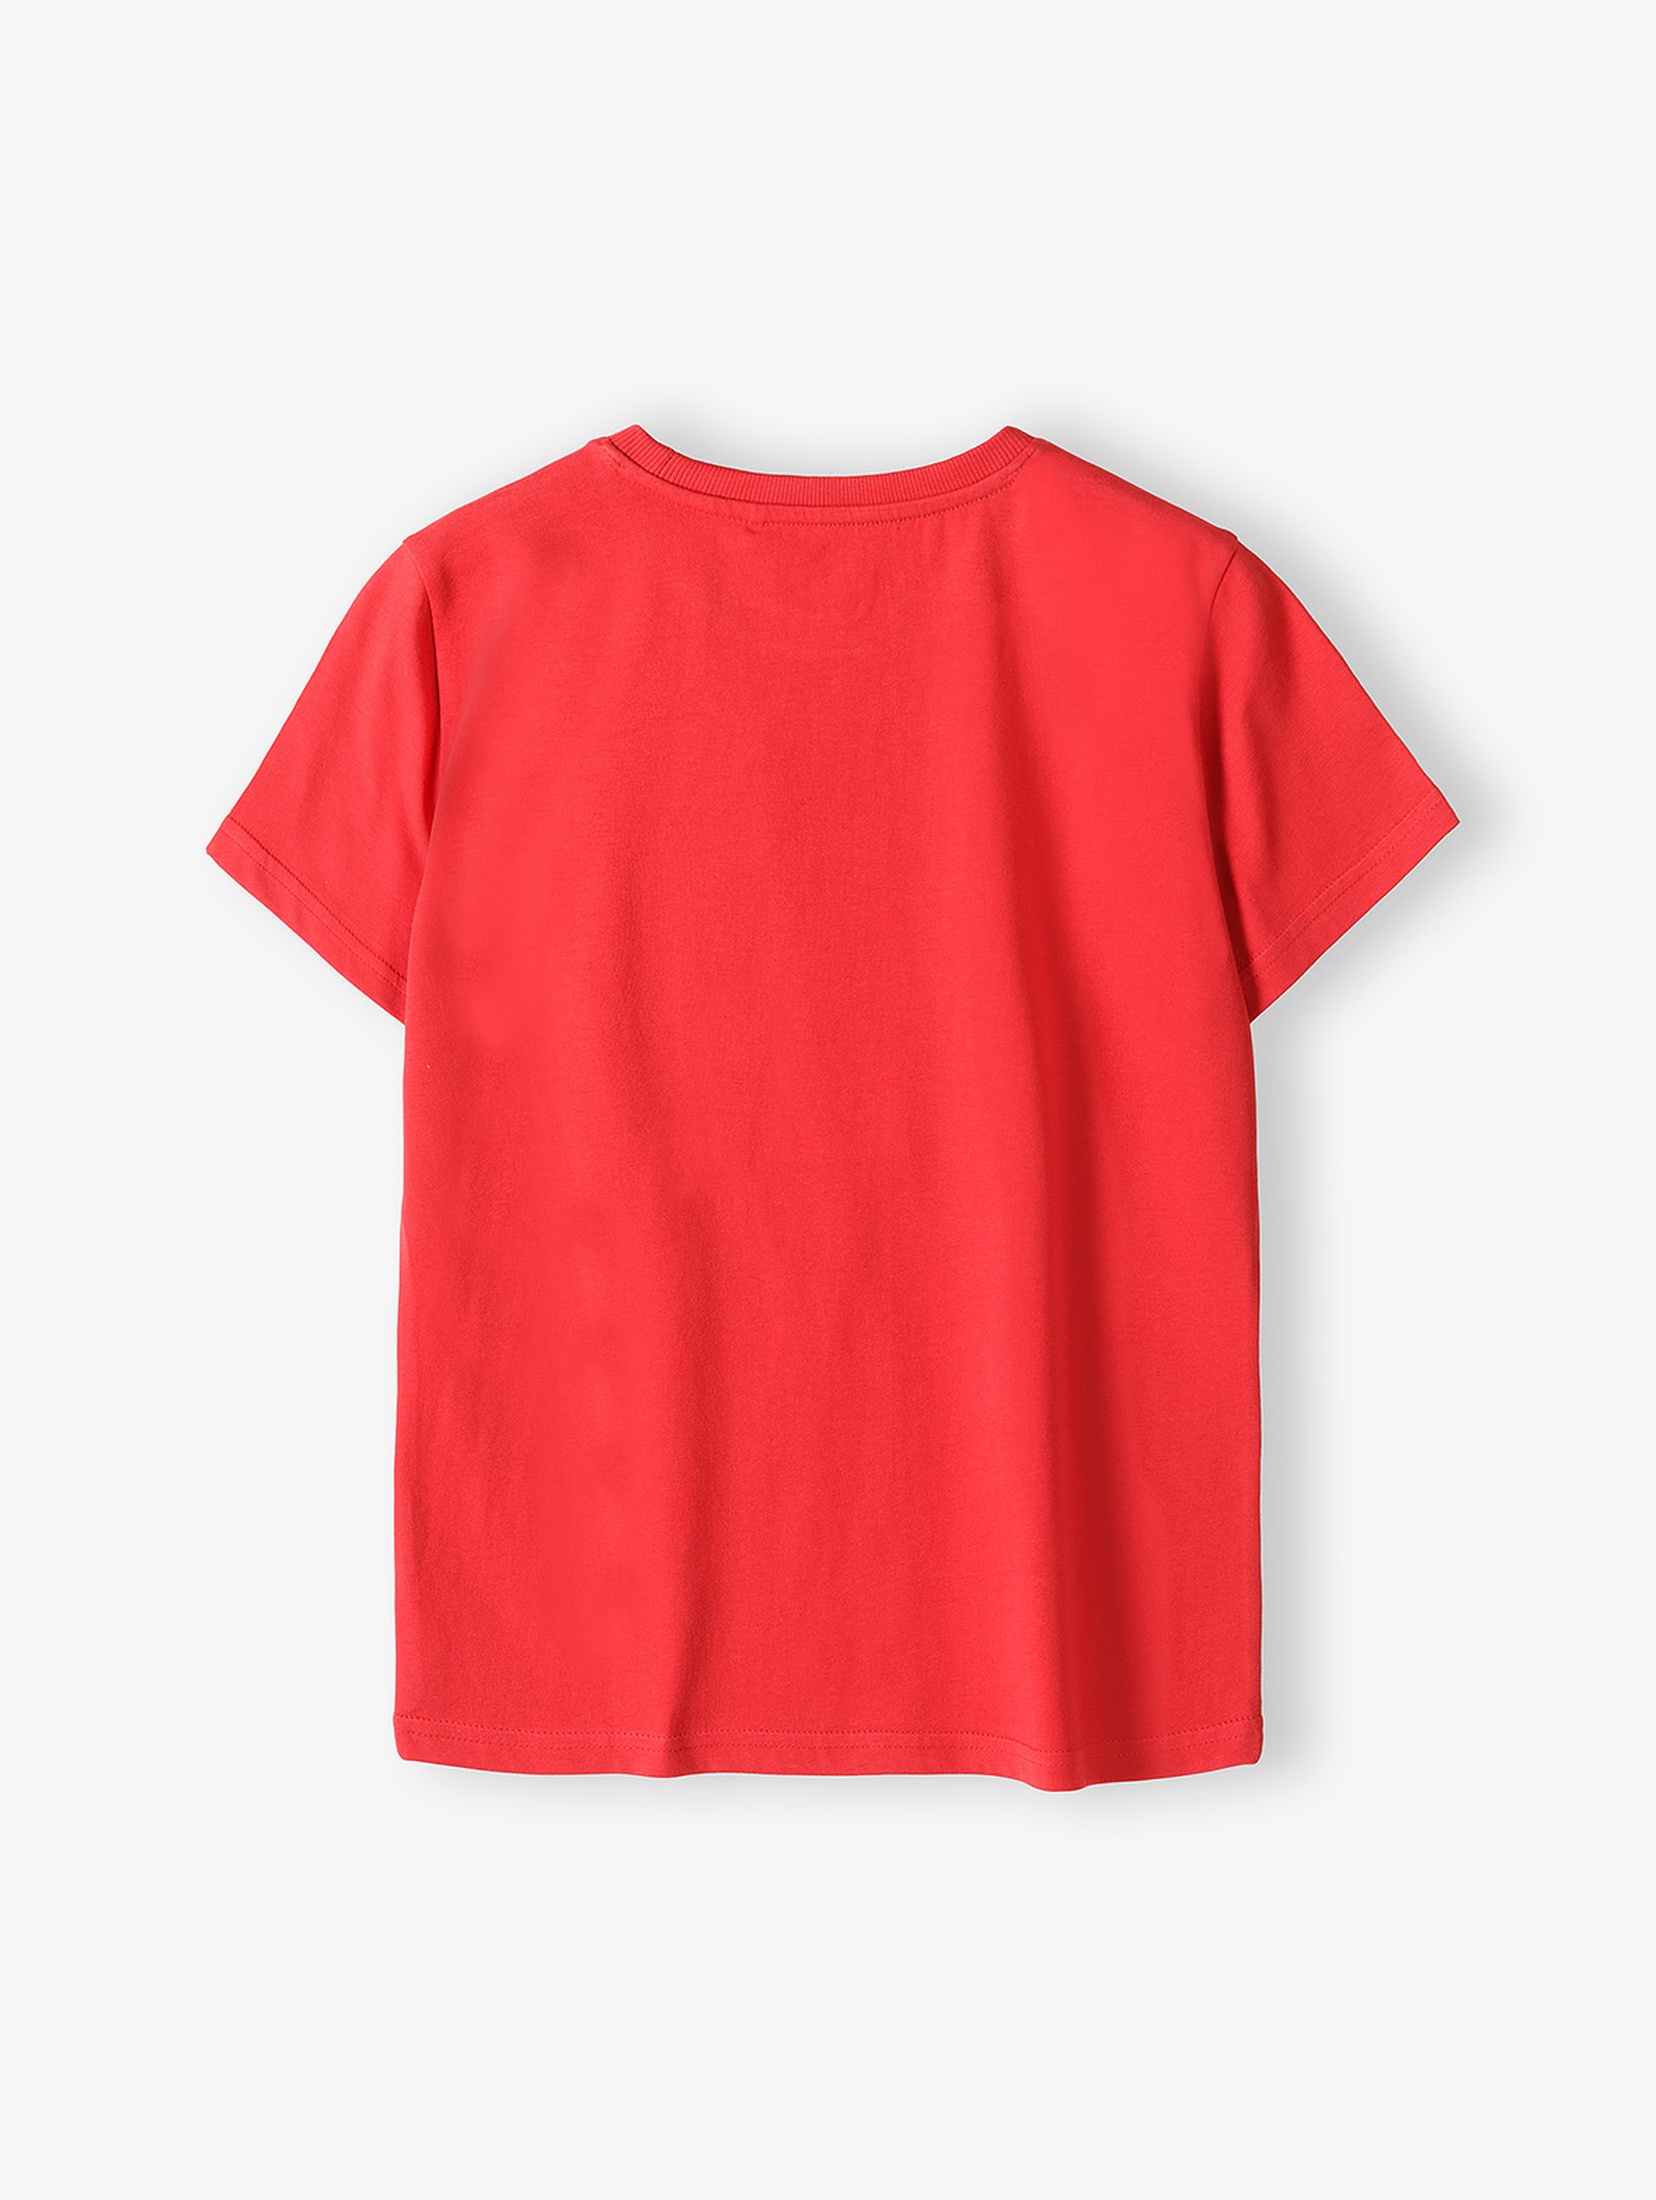 Czerwony t- shirt z napisem "Sainta is here"